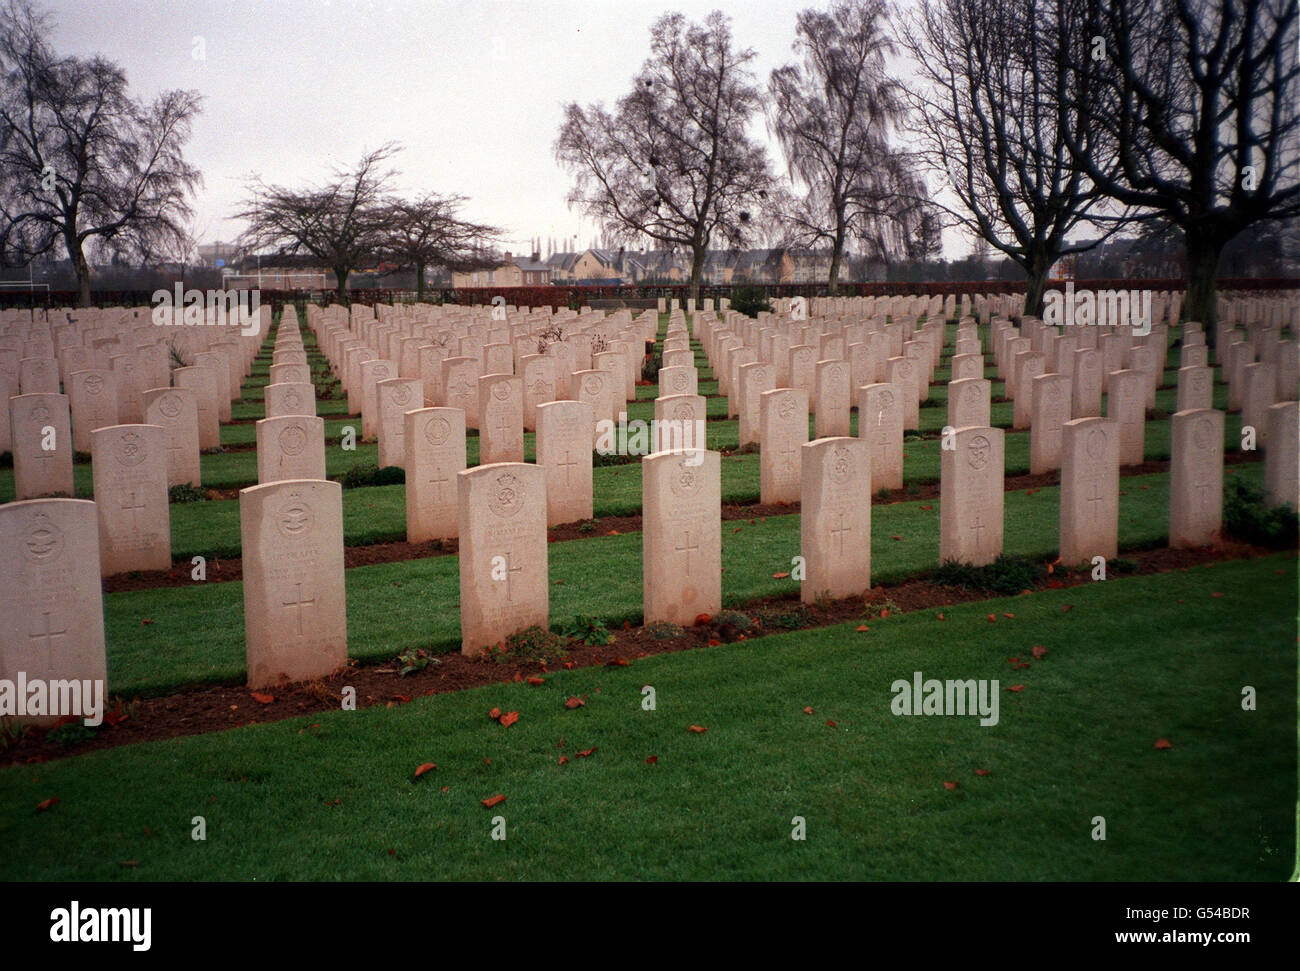 BRITISCHE KRIEGSGRÄBER: Bayeux, am 7. Juni 1944 befreit, hat den größten britischen Friedhof in der Normandie mit rund 4,663 britischen Gräbern und weiteren 1,837 Namen auf seinem Denkmal. Am 6. Juni wird die Königin an einem Gottesdienst mit britischen Veteranen des Zweiten Weltkriegs teilnehmen. *10/10/2000 Britische Gärtner, die Kriegsgräber in ganz Europa pflegen, haben angekündigt, dass sie bereit sind, rechtliche Schritte einzuleiten, um die schwingenden Lohnkürzungen rückgängig zu machen. Die 77 Gärtner, die bei der Commonwealth war Graves Commission angestellt sind und Mitglieder der Transport and General Workers' Union sind, kümmern sich um Kriegsgärten und Gräber Stockfoto